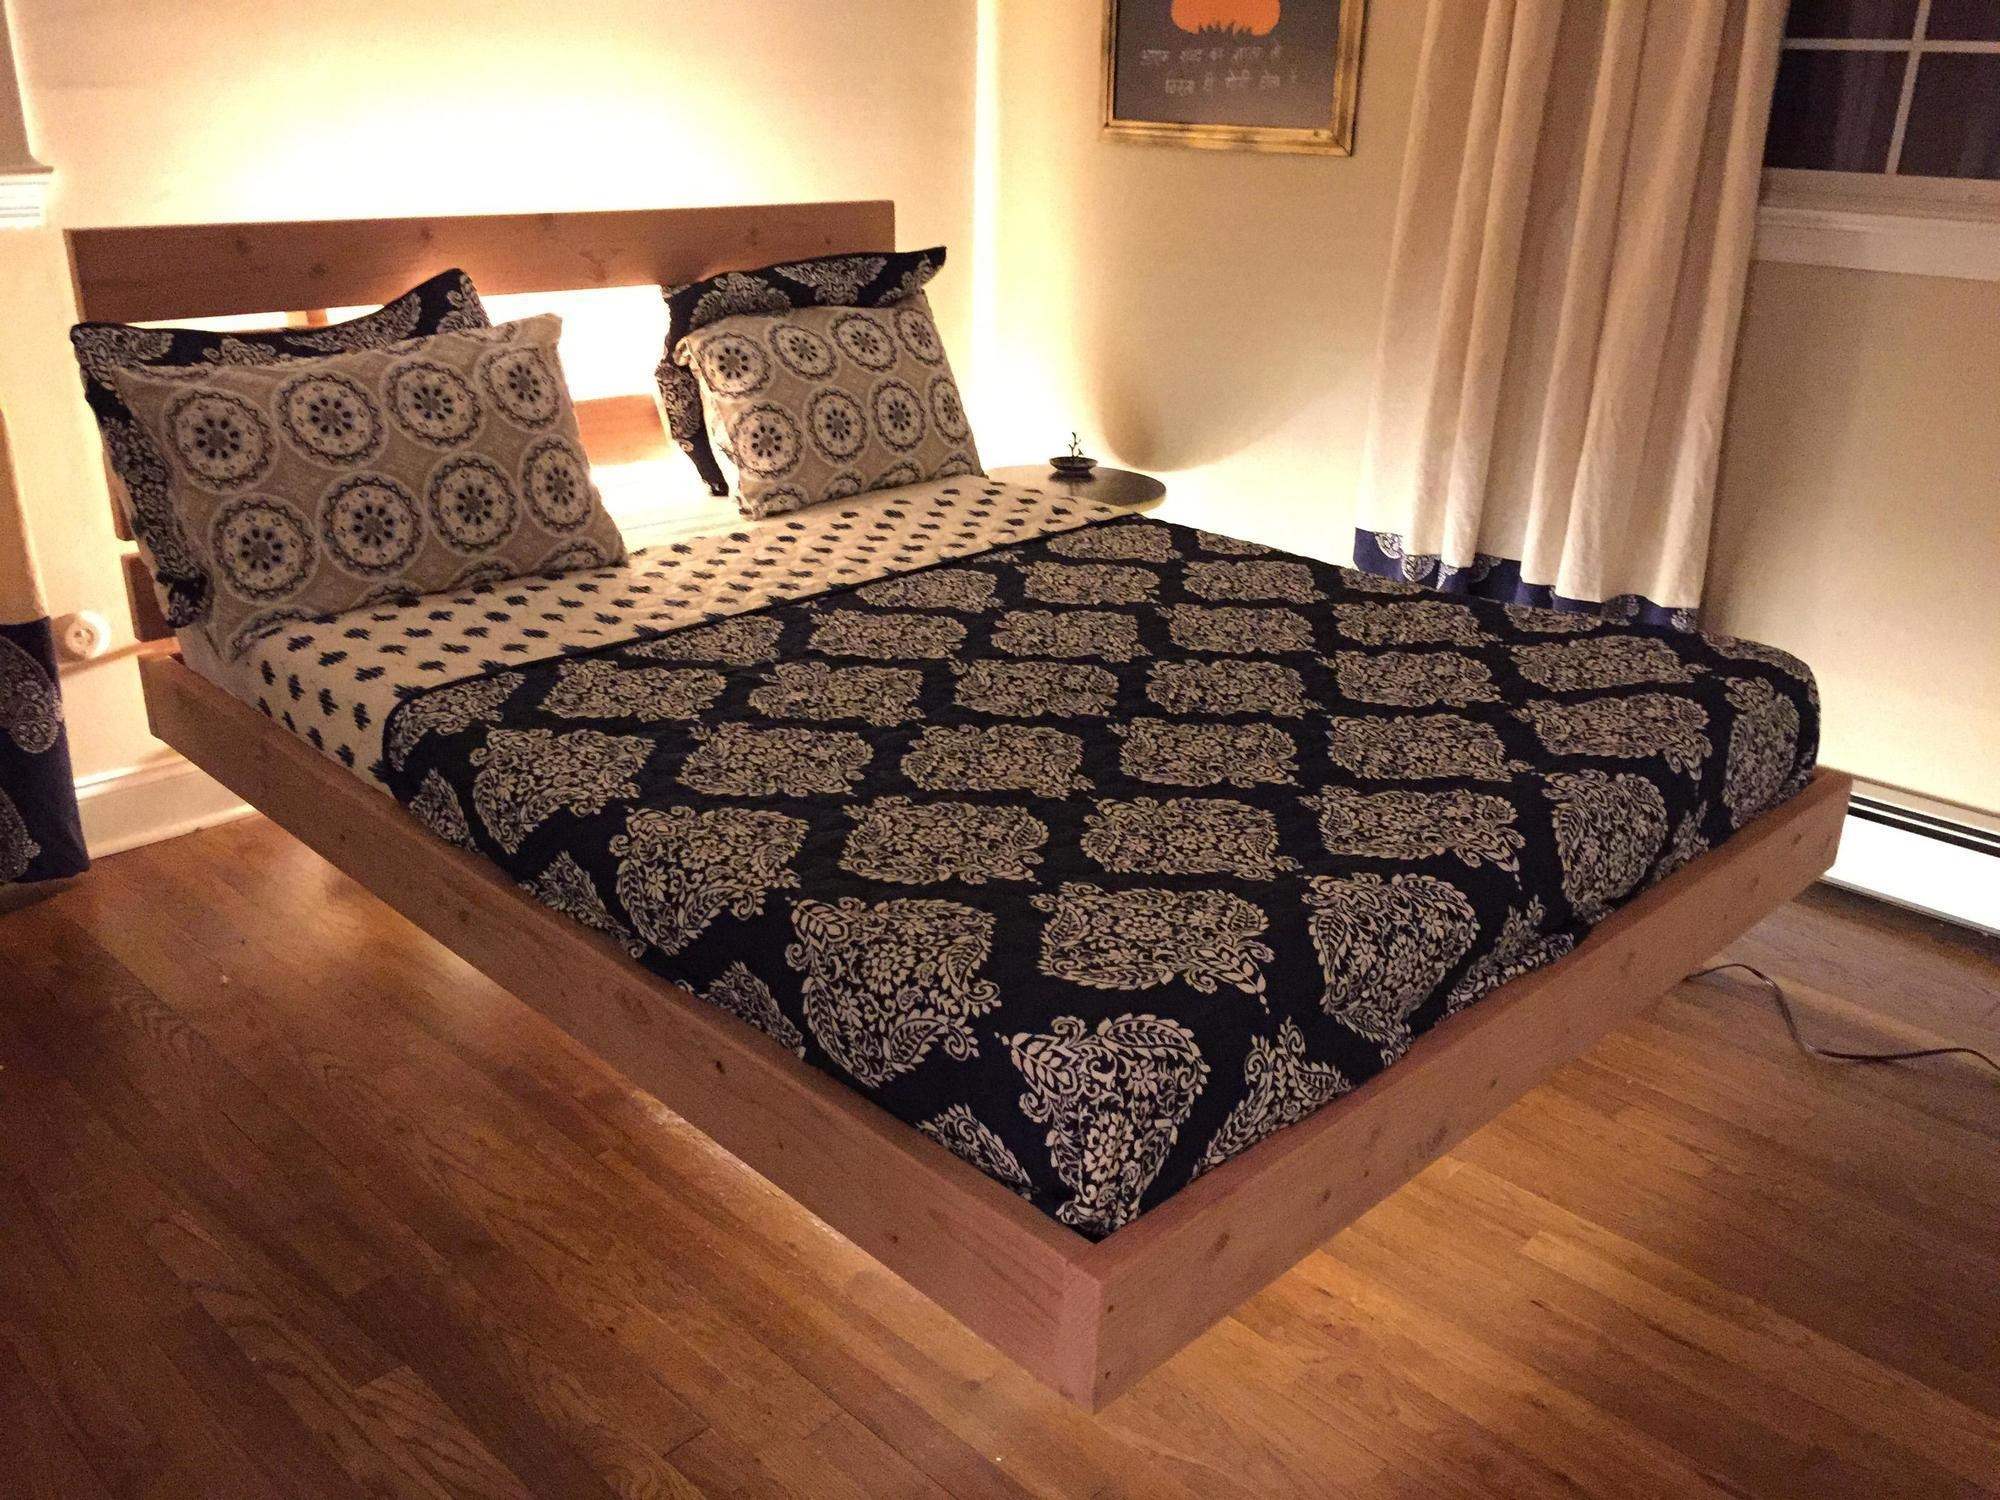 DIY King Size Bed Frame Plans
 20 DIY Hanging Beds